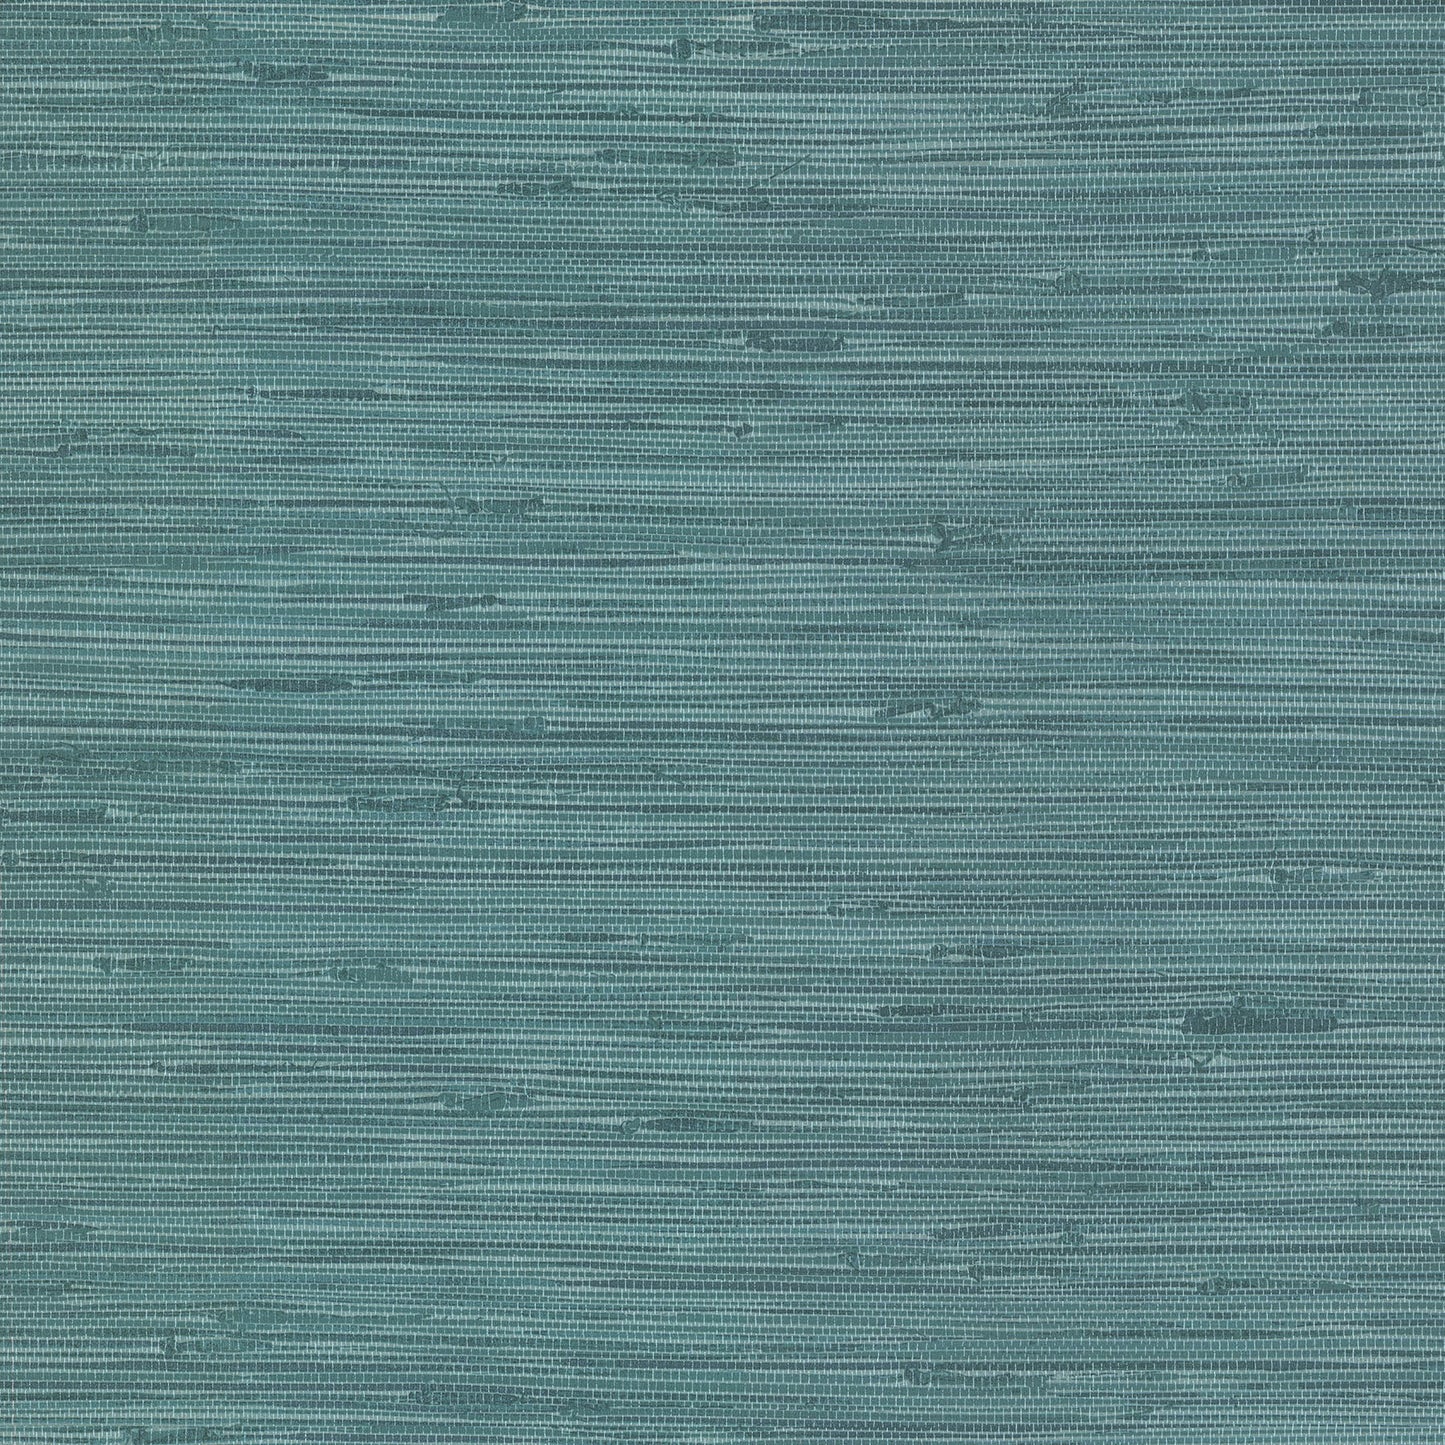 View 2766-24415 KItchen  Bath Essentials Lycaste Teal Weave Texture Brewster Wallpaper